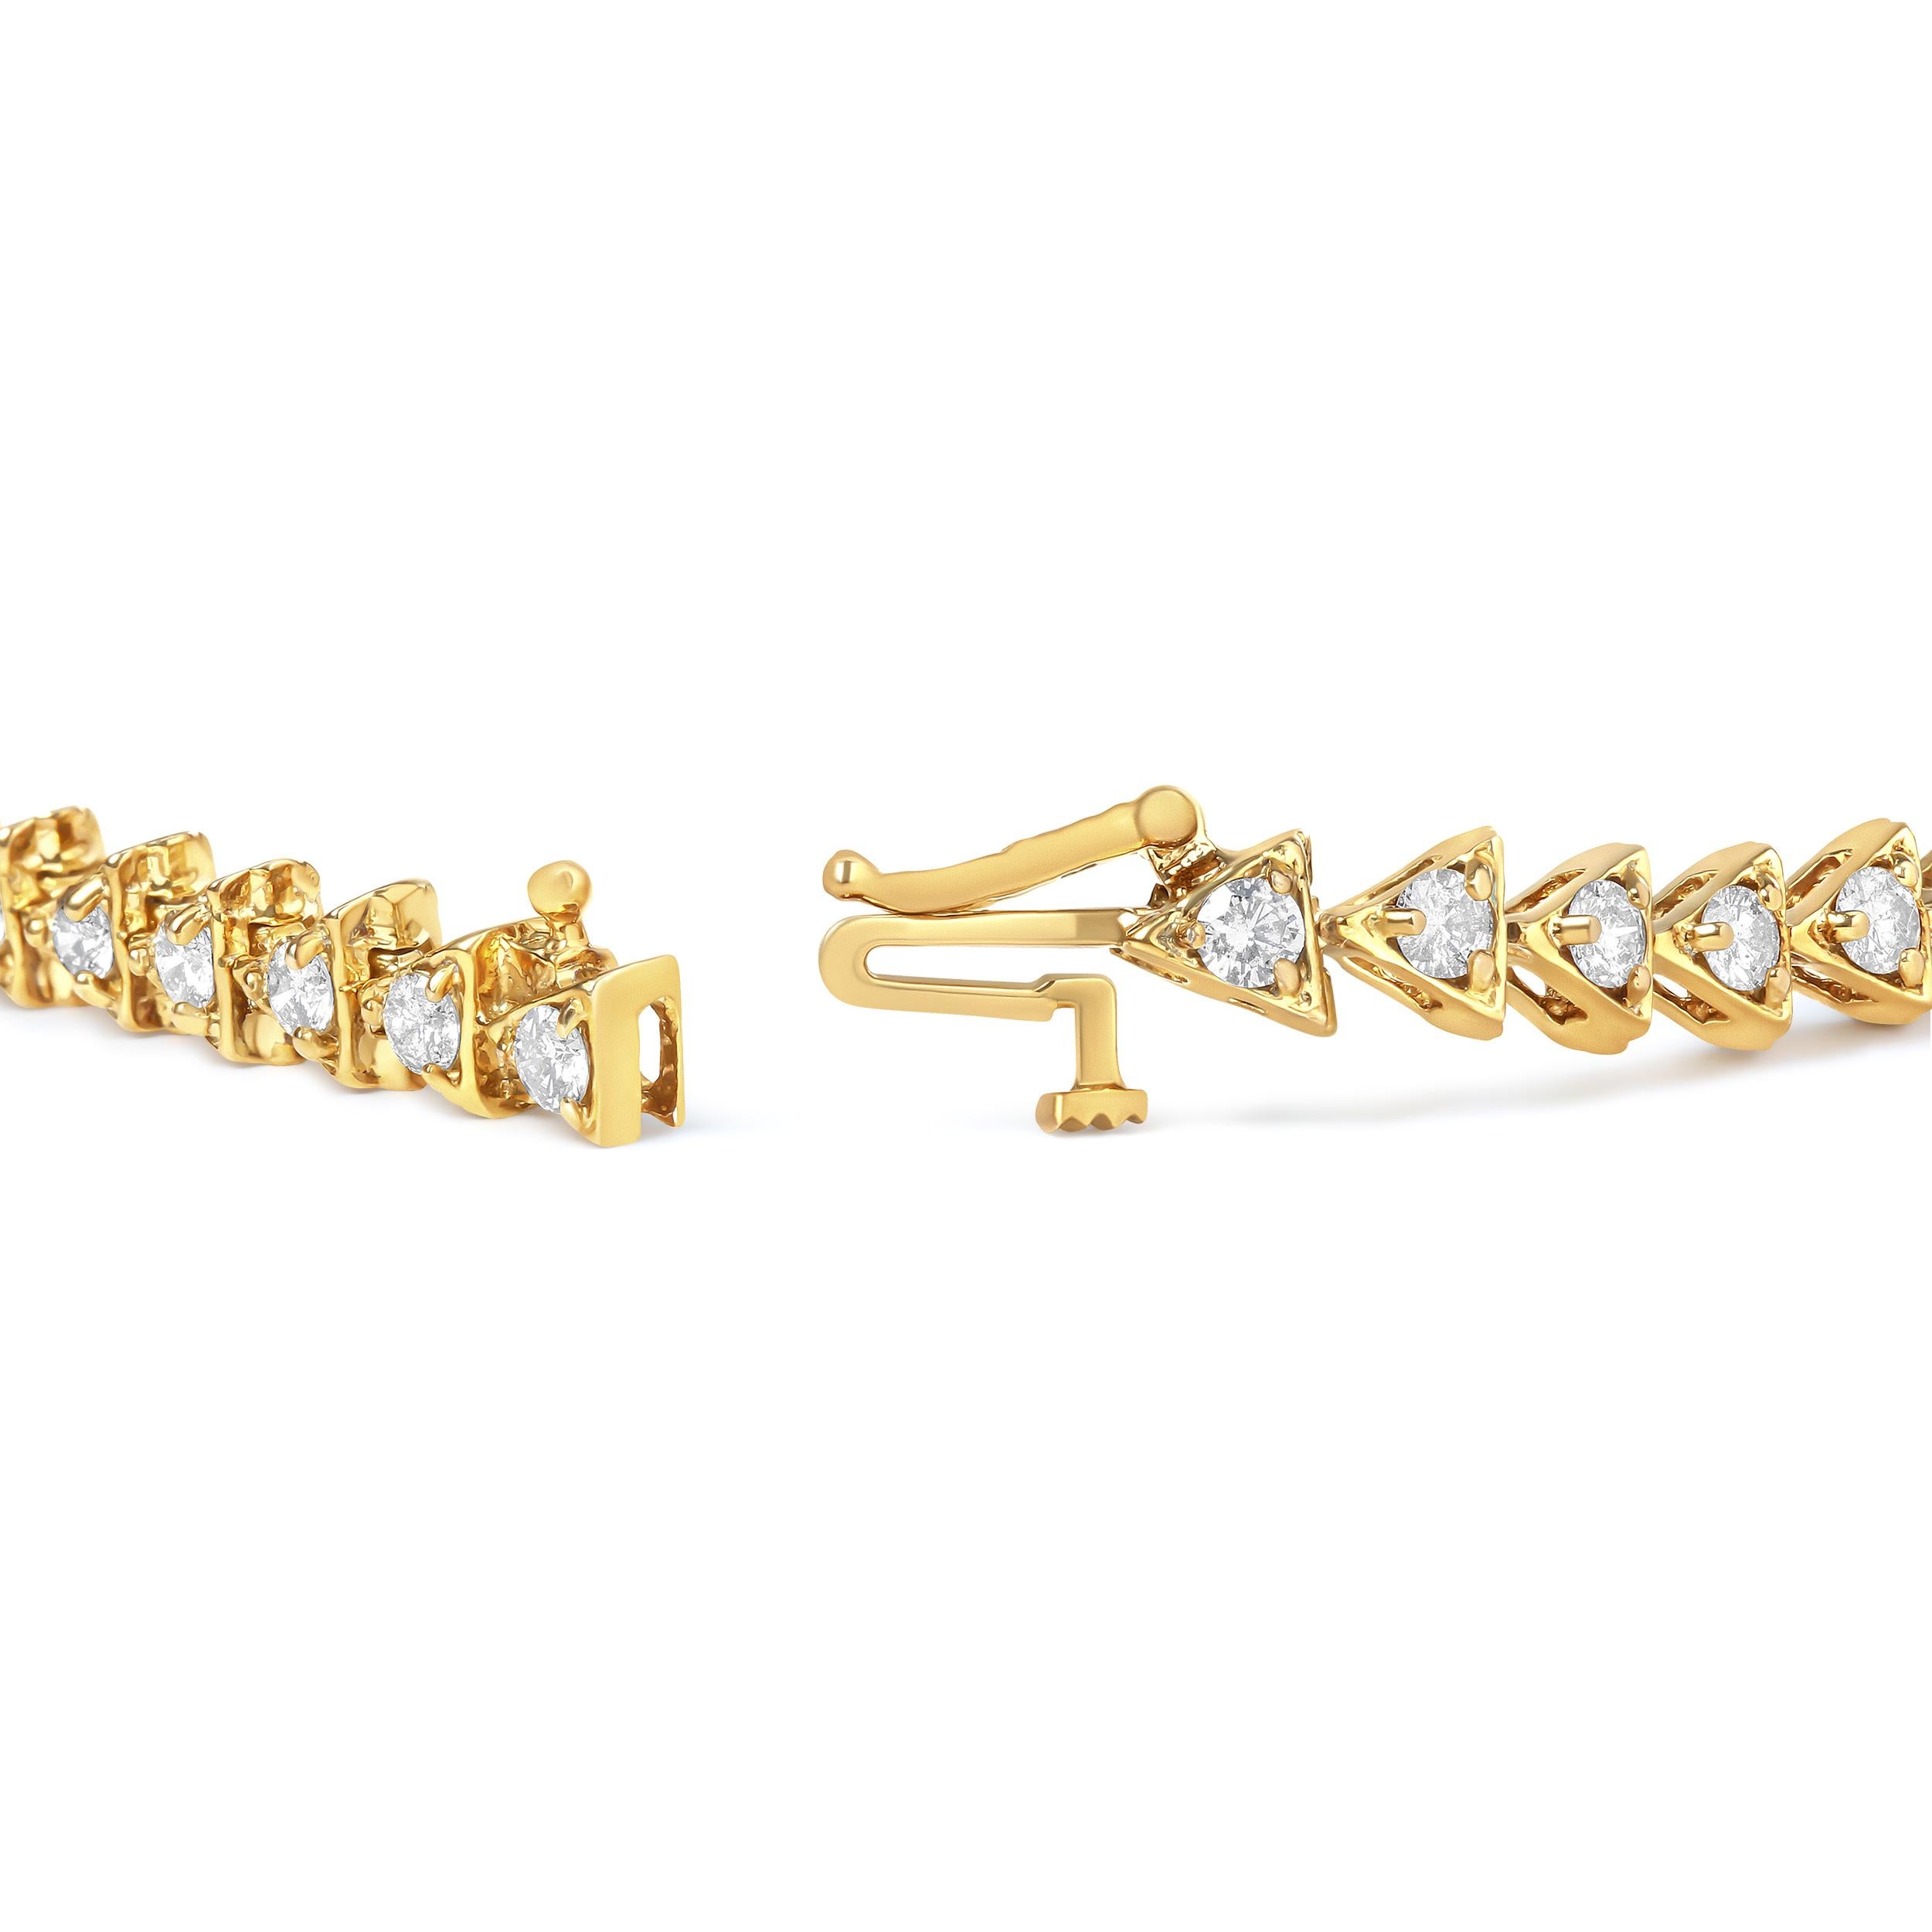 Notre bracelet est le moyen idéal d'ajouter une touche d'éclat à votre garde-robe quotidienne. Le bracelet comporte des maillons en argent sterling 925 plaqué or jaune 10 carats, chacun en forme de triangle et serti d'un diamant naturel. Les 3.0